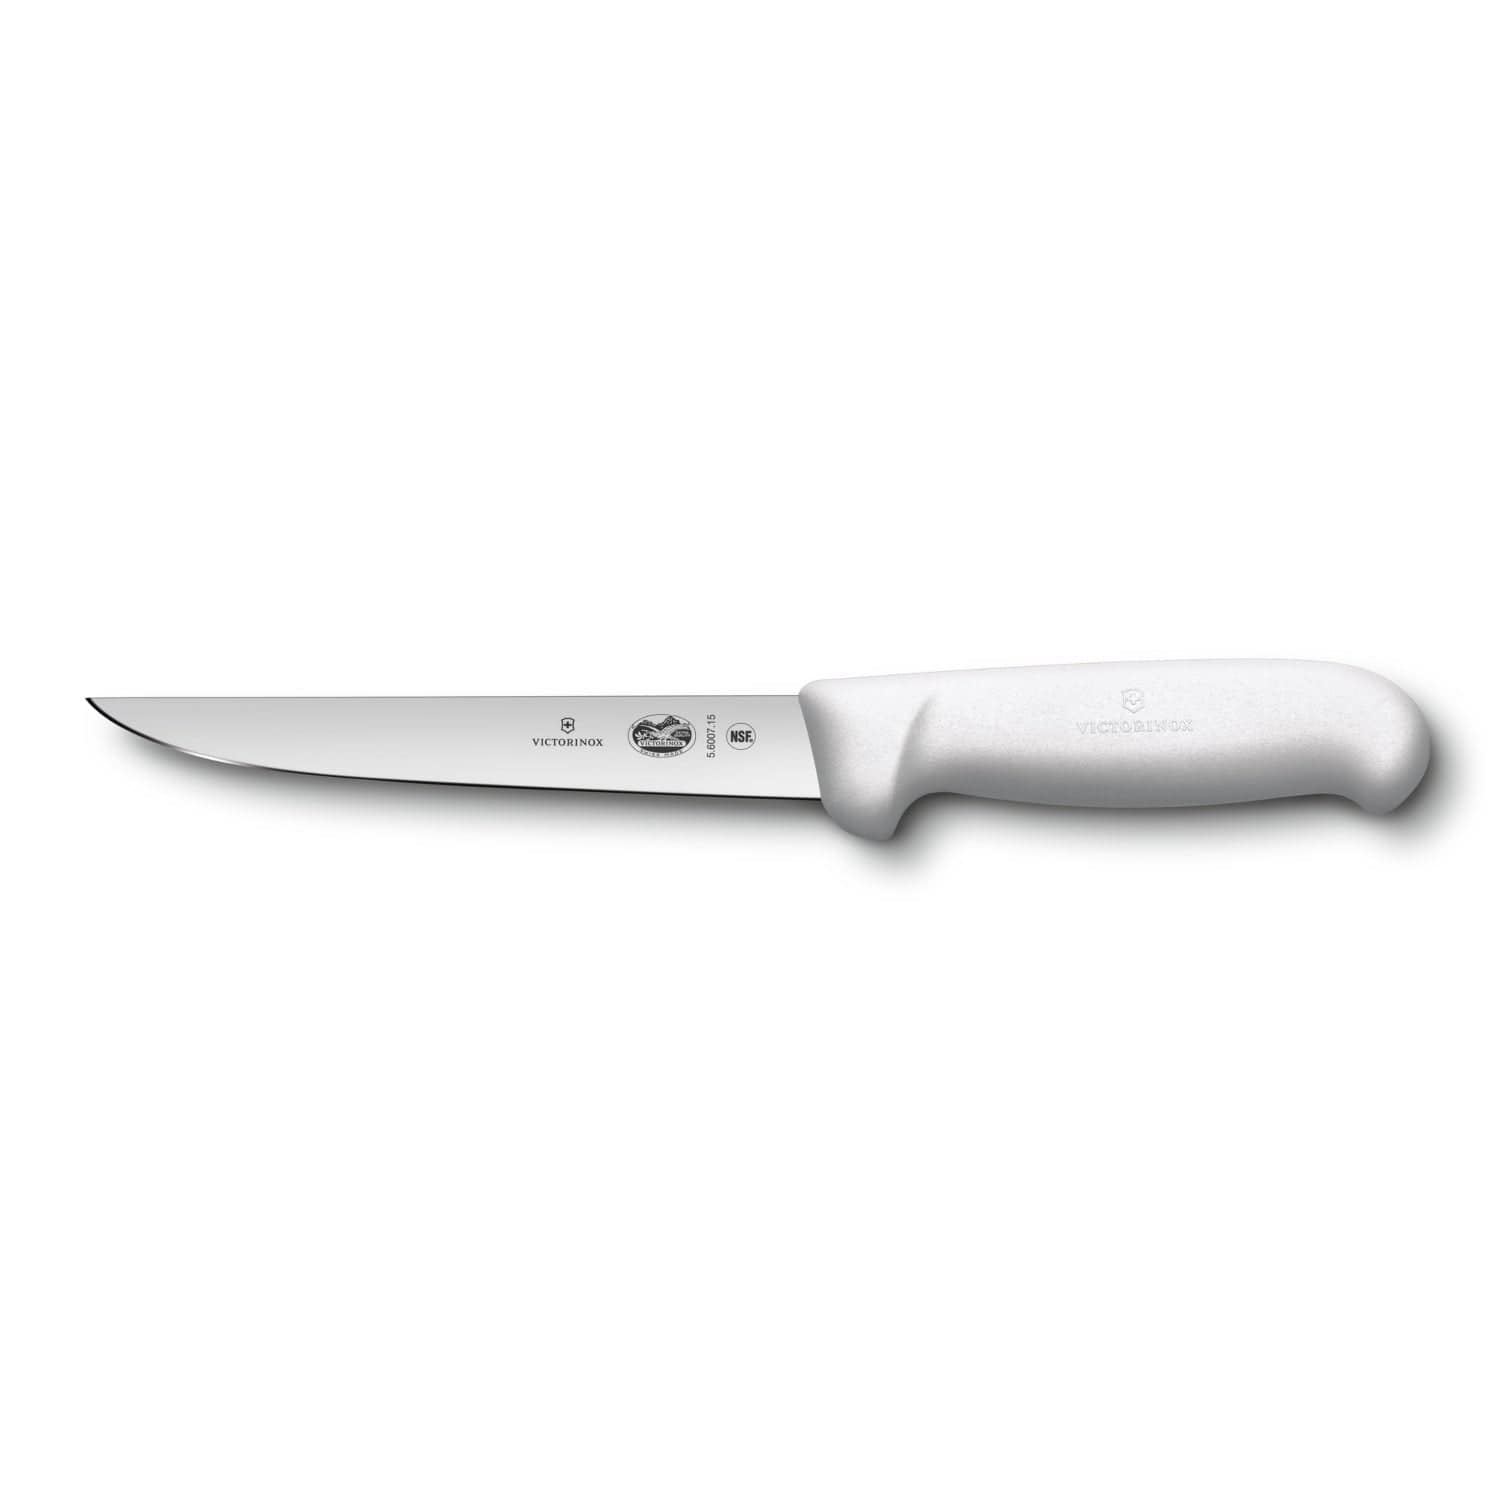 فيكتورينوكس فيبروكس سكين دعامة مستقيم عريض الشفرة أبيض 15 سم - 5.6001.15